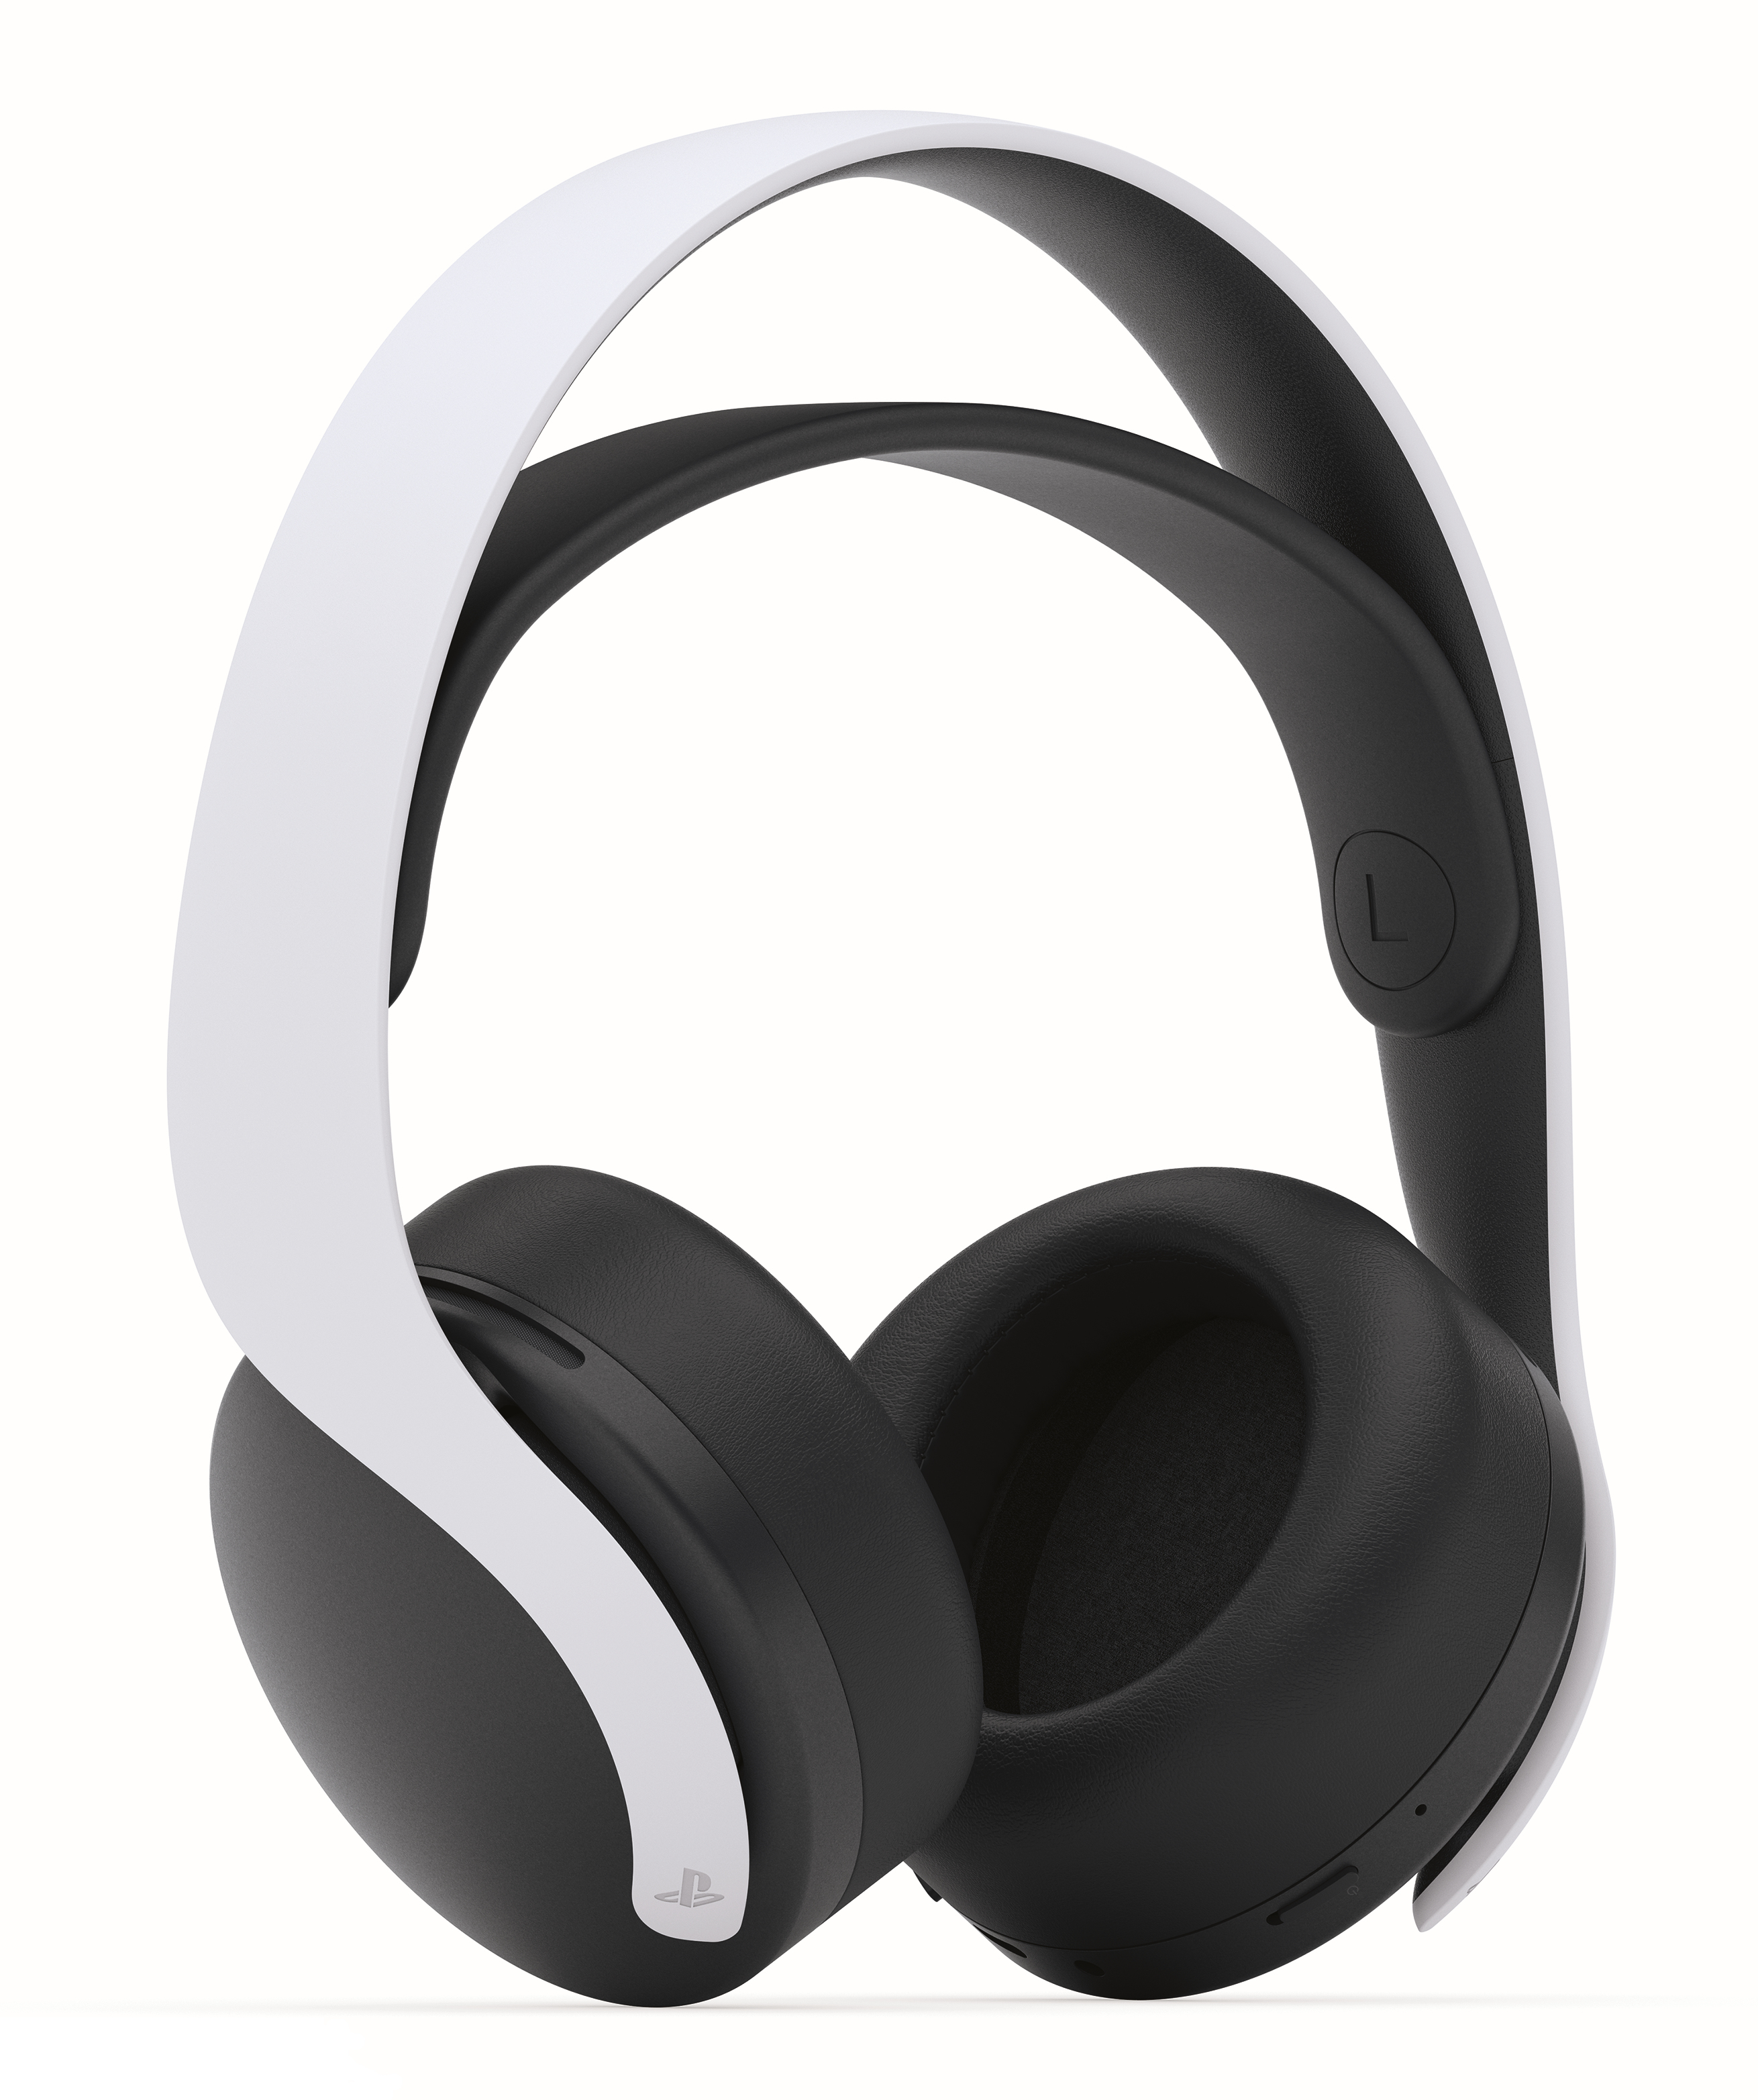 Sony PULSE 3D draadloze headset